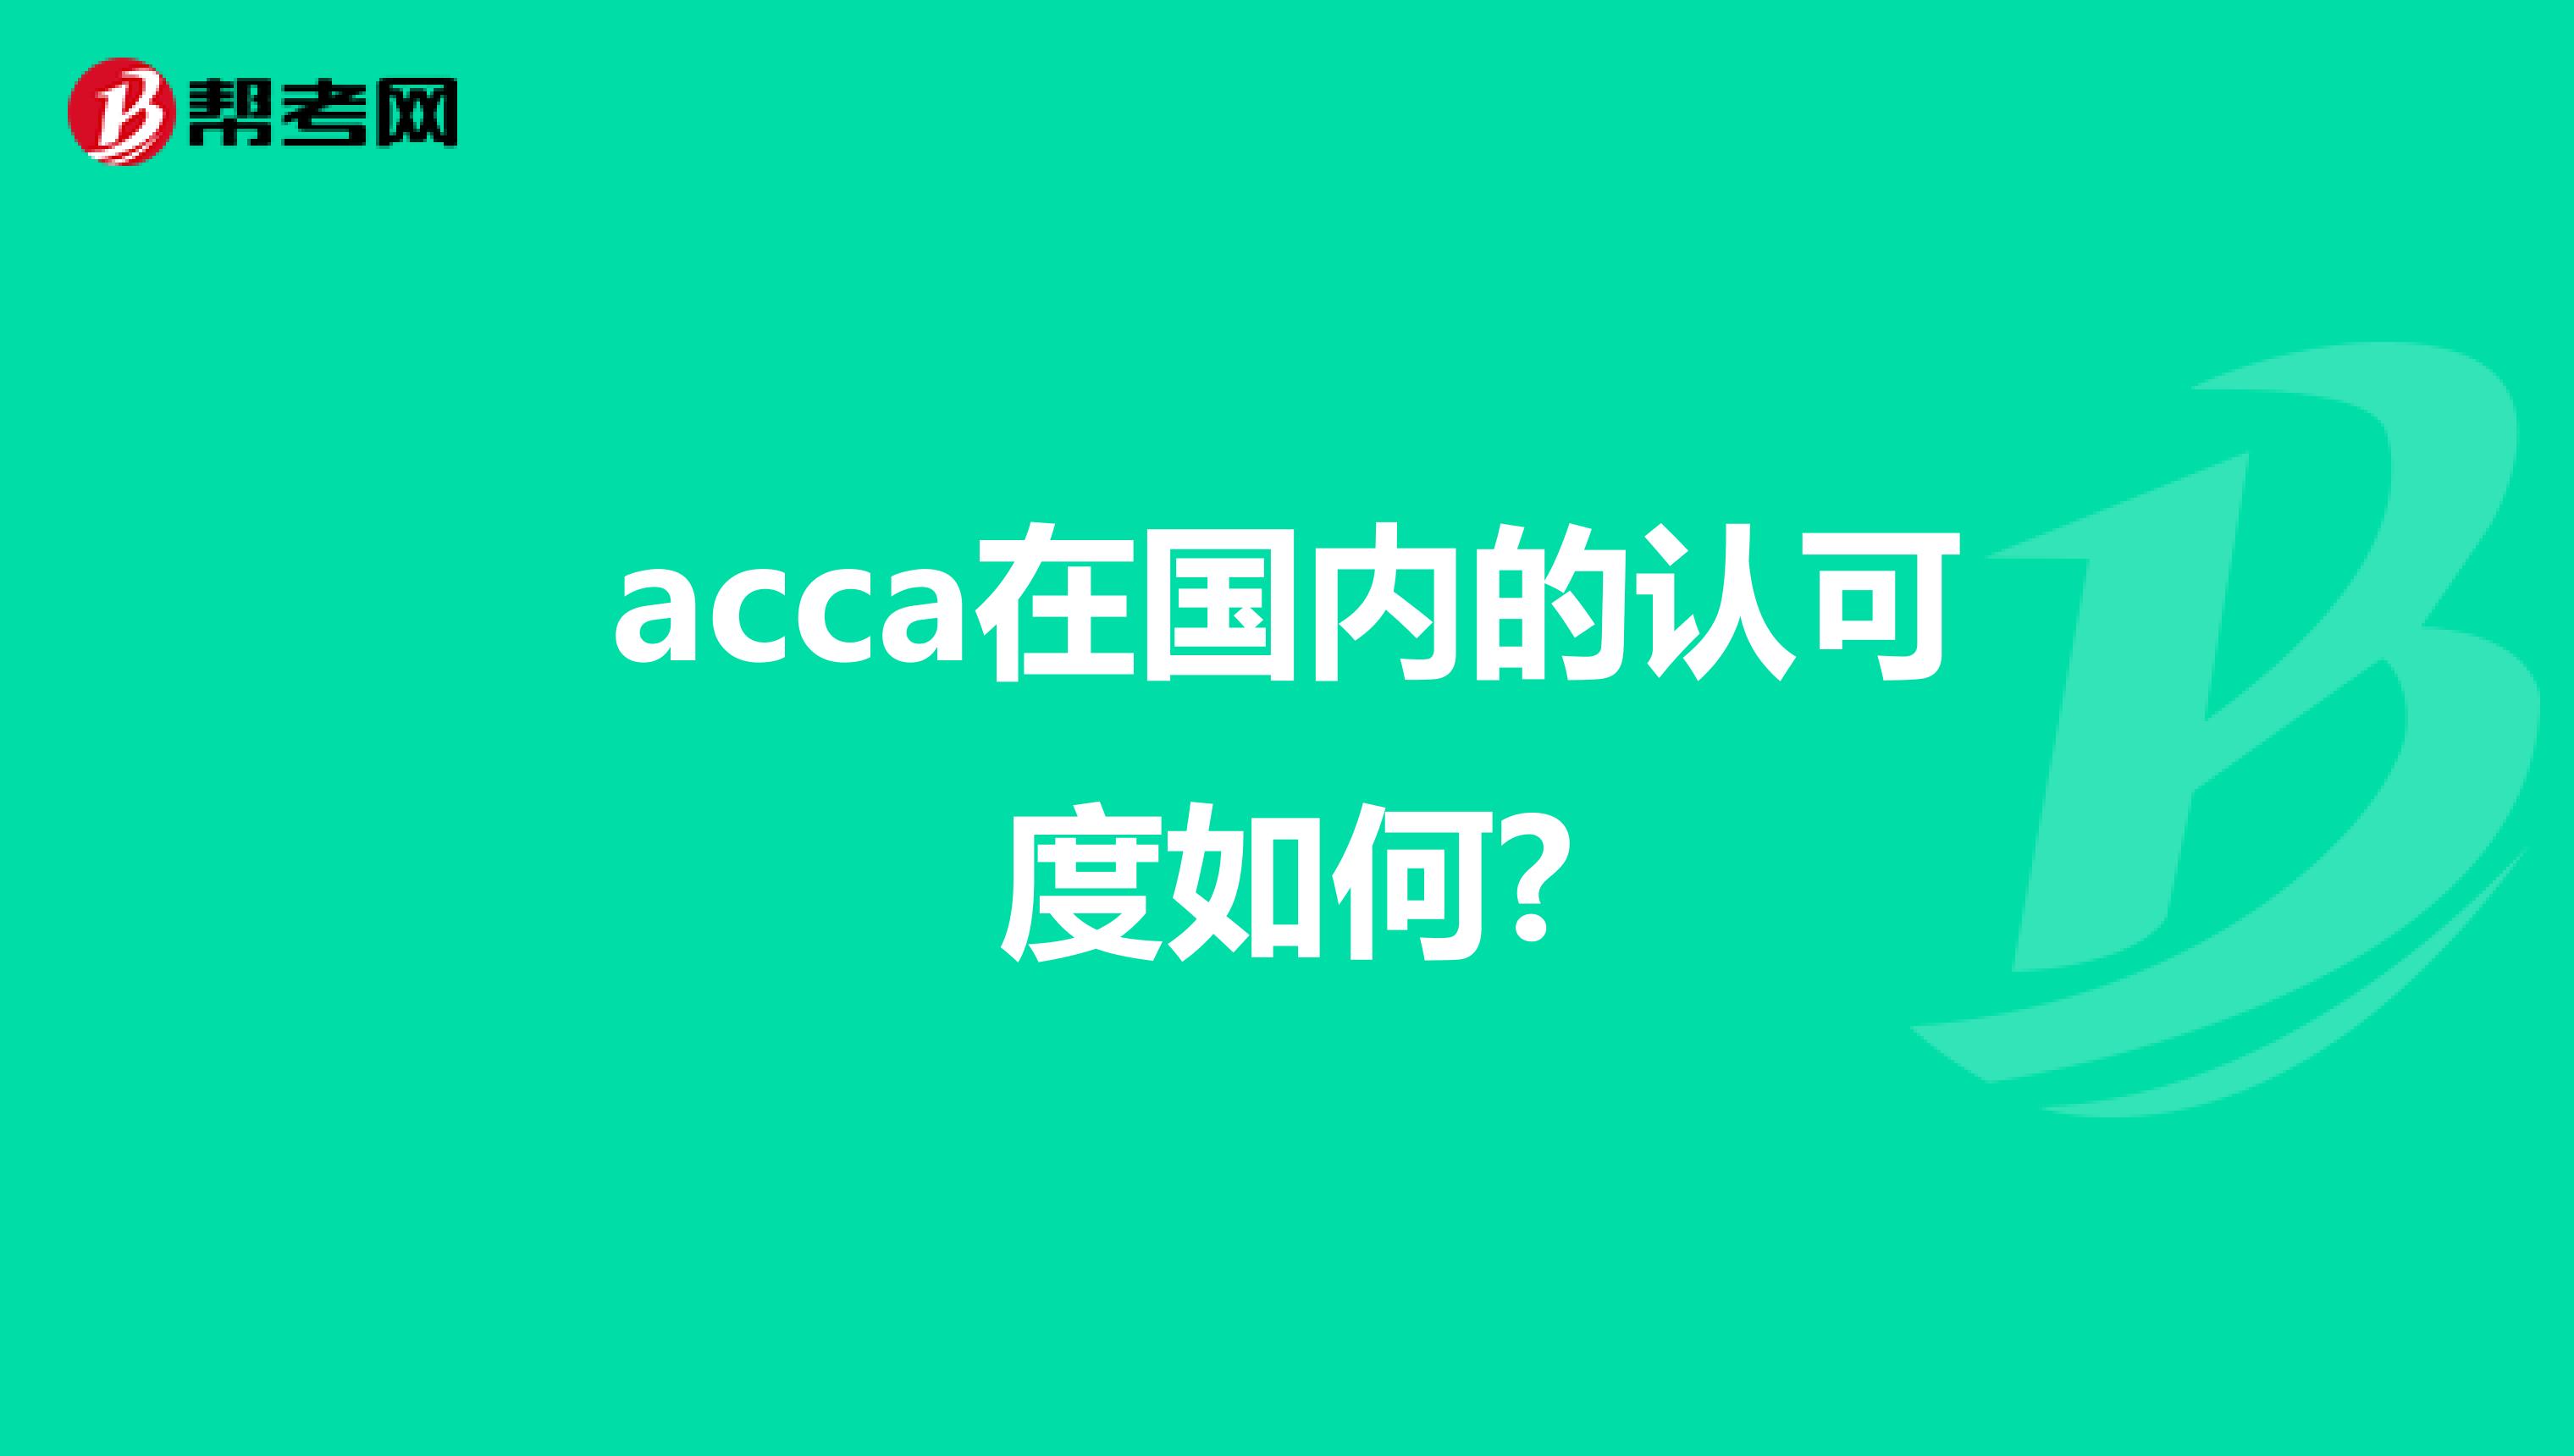 acca在国内的认可度如何?